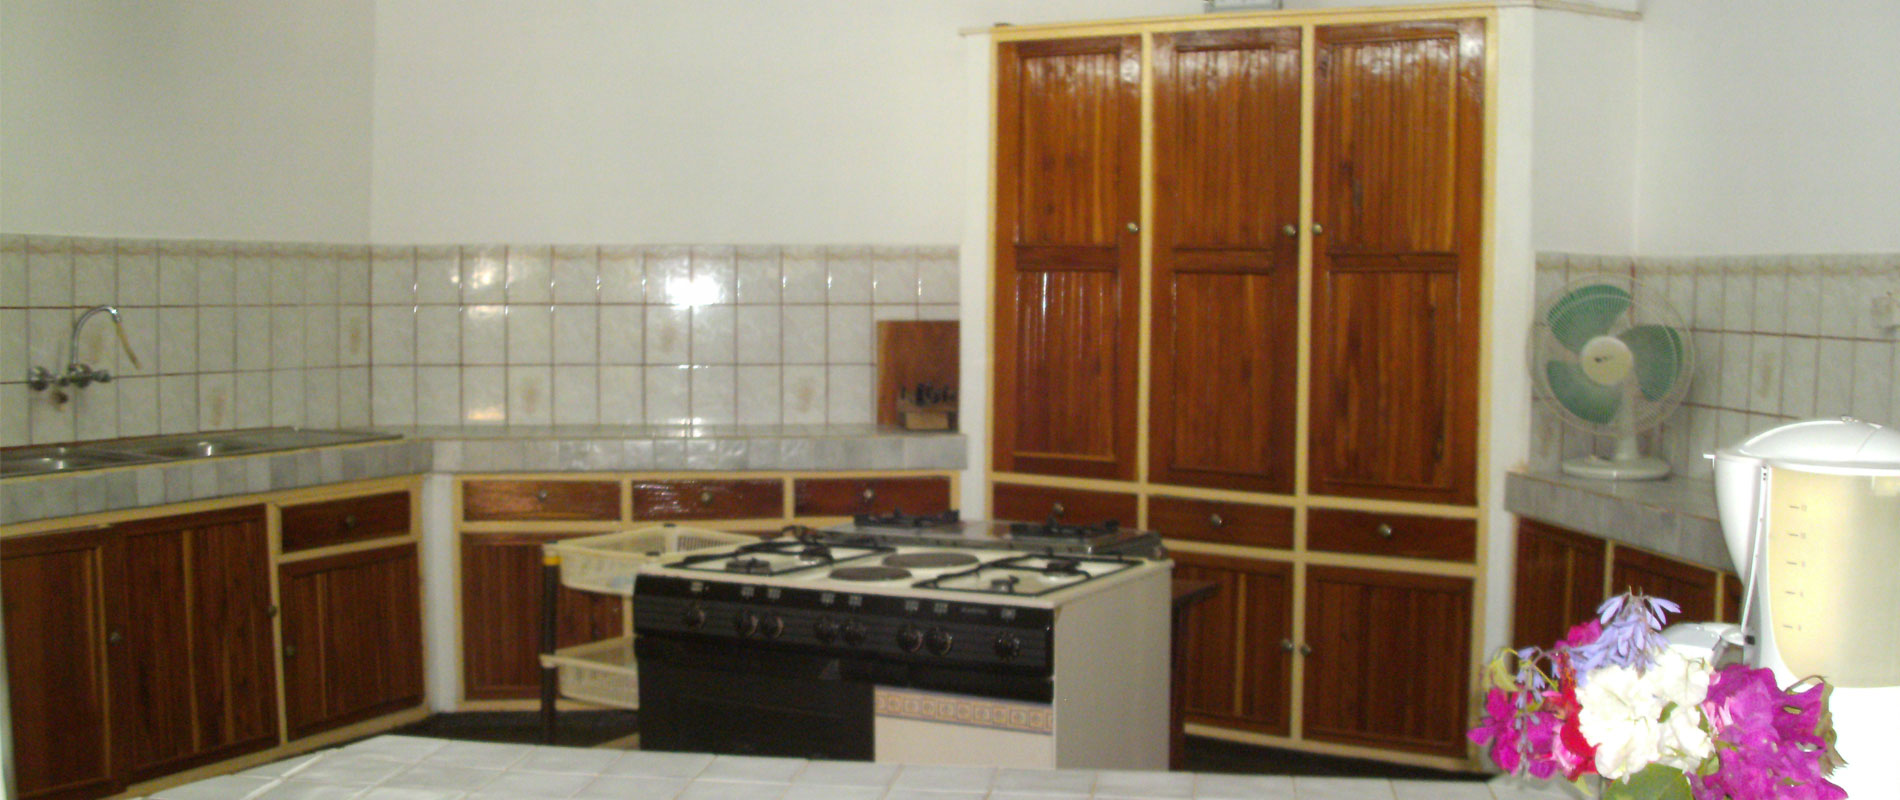 Wohnraum und Küche